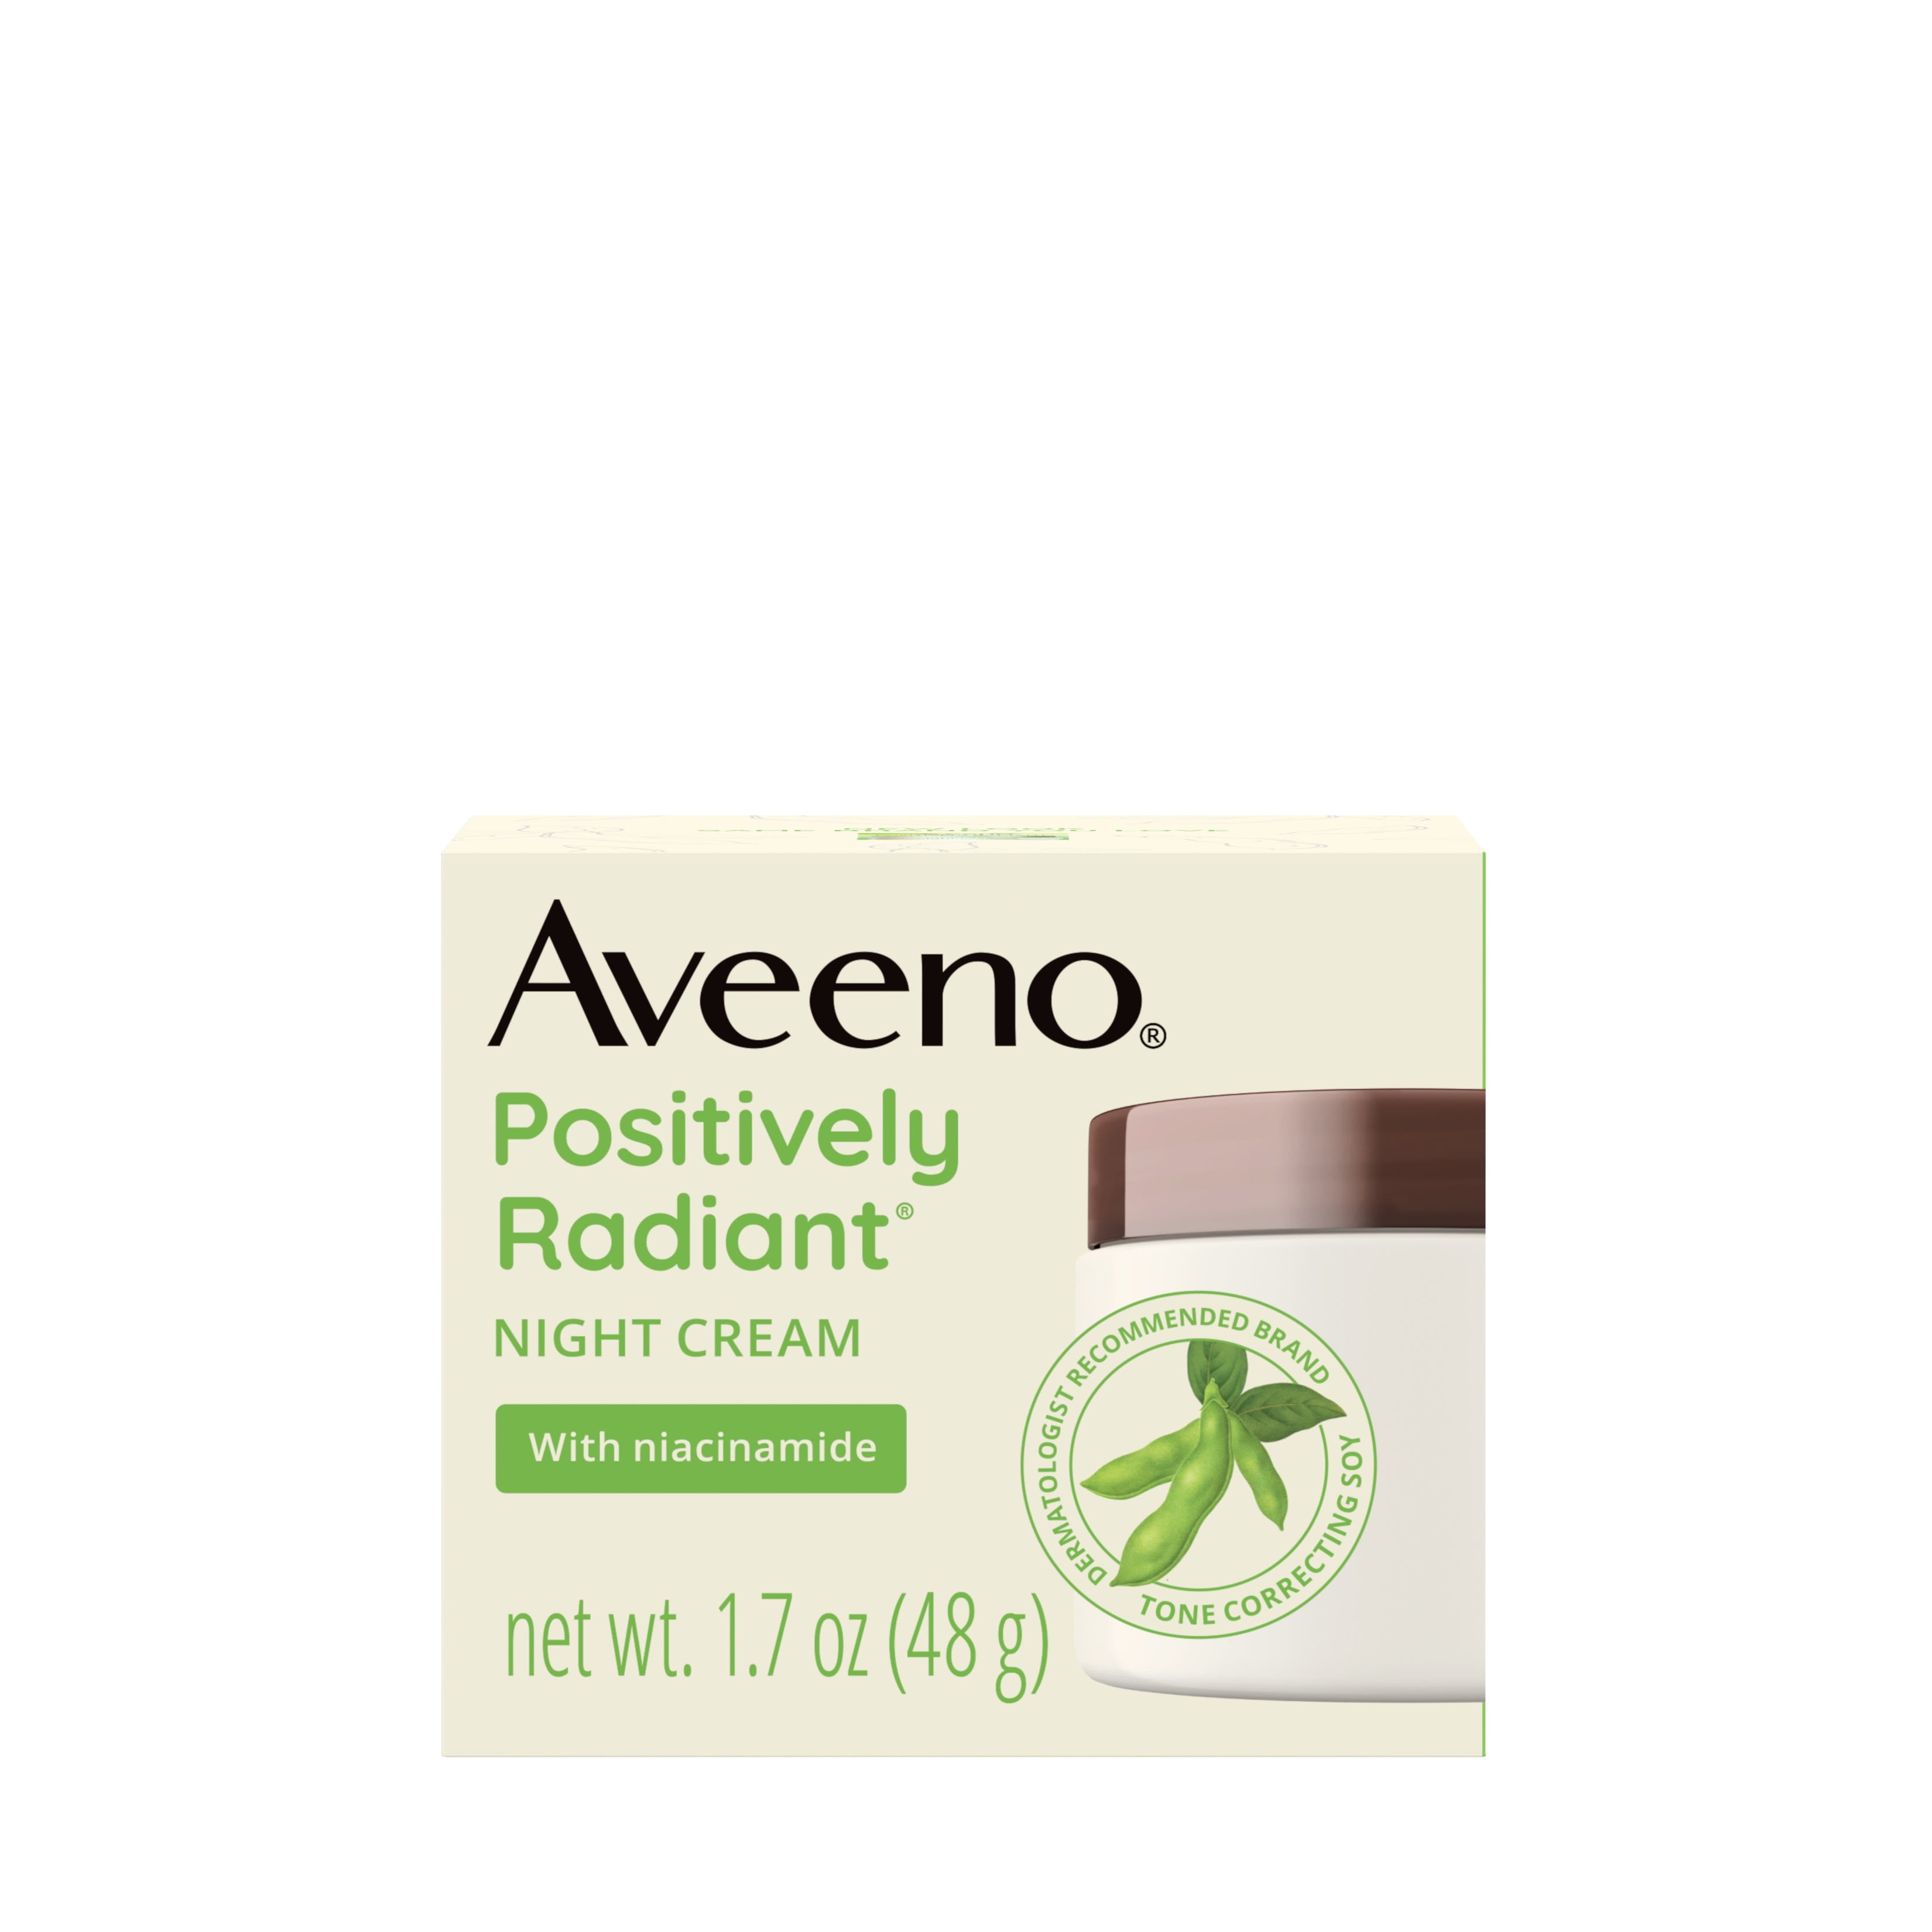 Aveeno Positively Radiant Moisturizing Face & Neck Night Cream, 1.7 oz